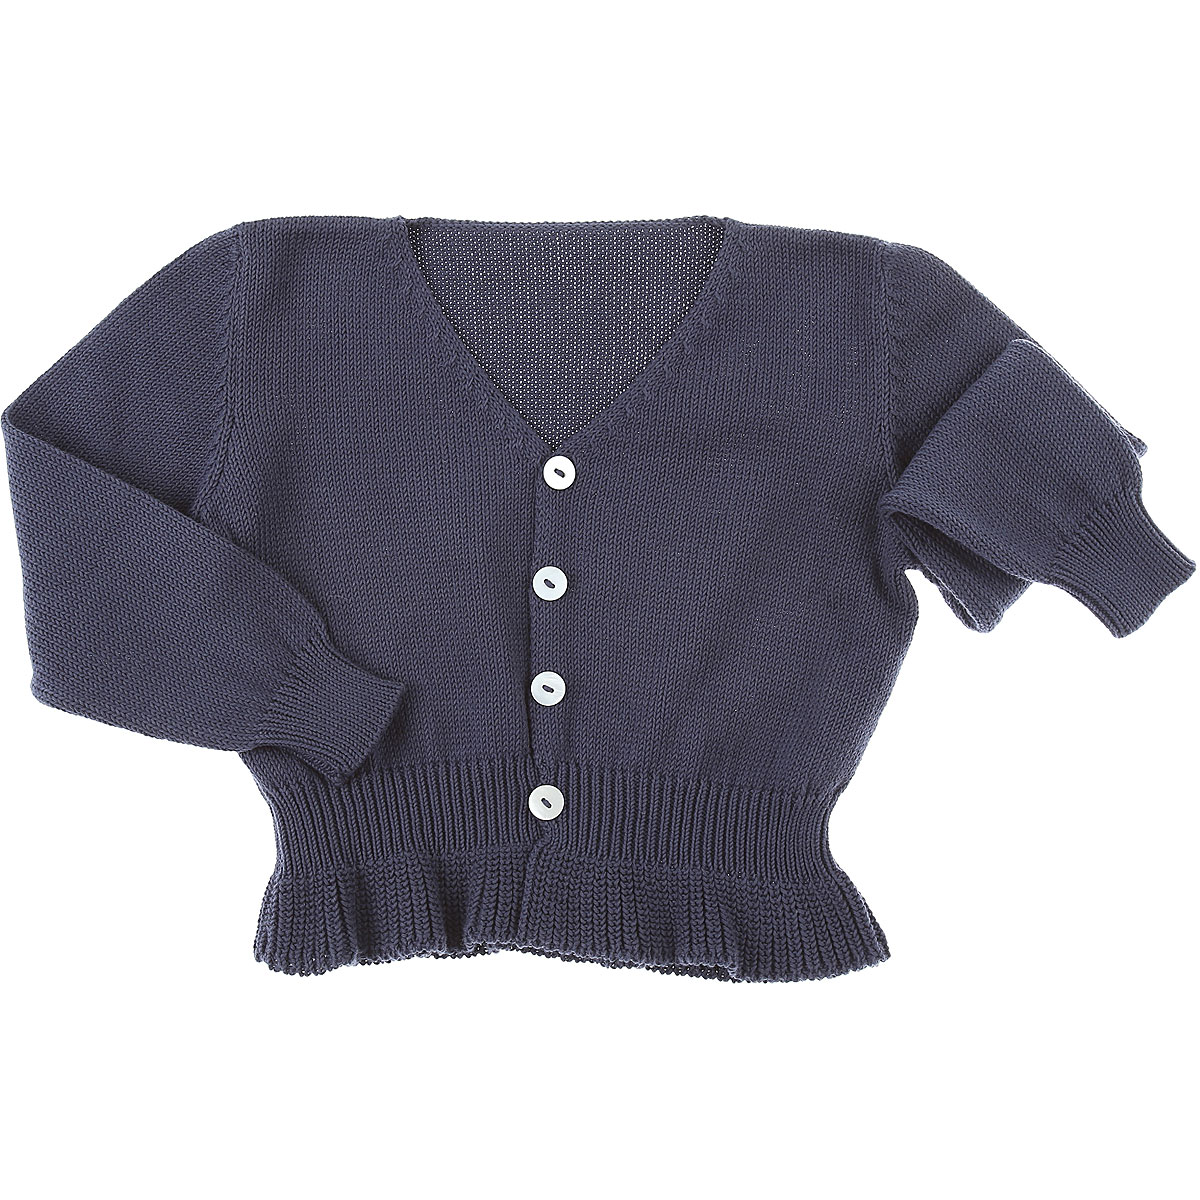 Le Nouveau Ne Baby Pullover für Mädchen Günstig im Outlet Sale, Blau, Baumwolle, 2017, 3Y 4Y